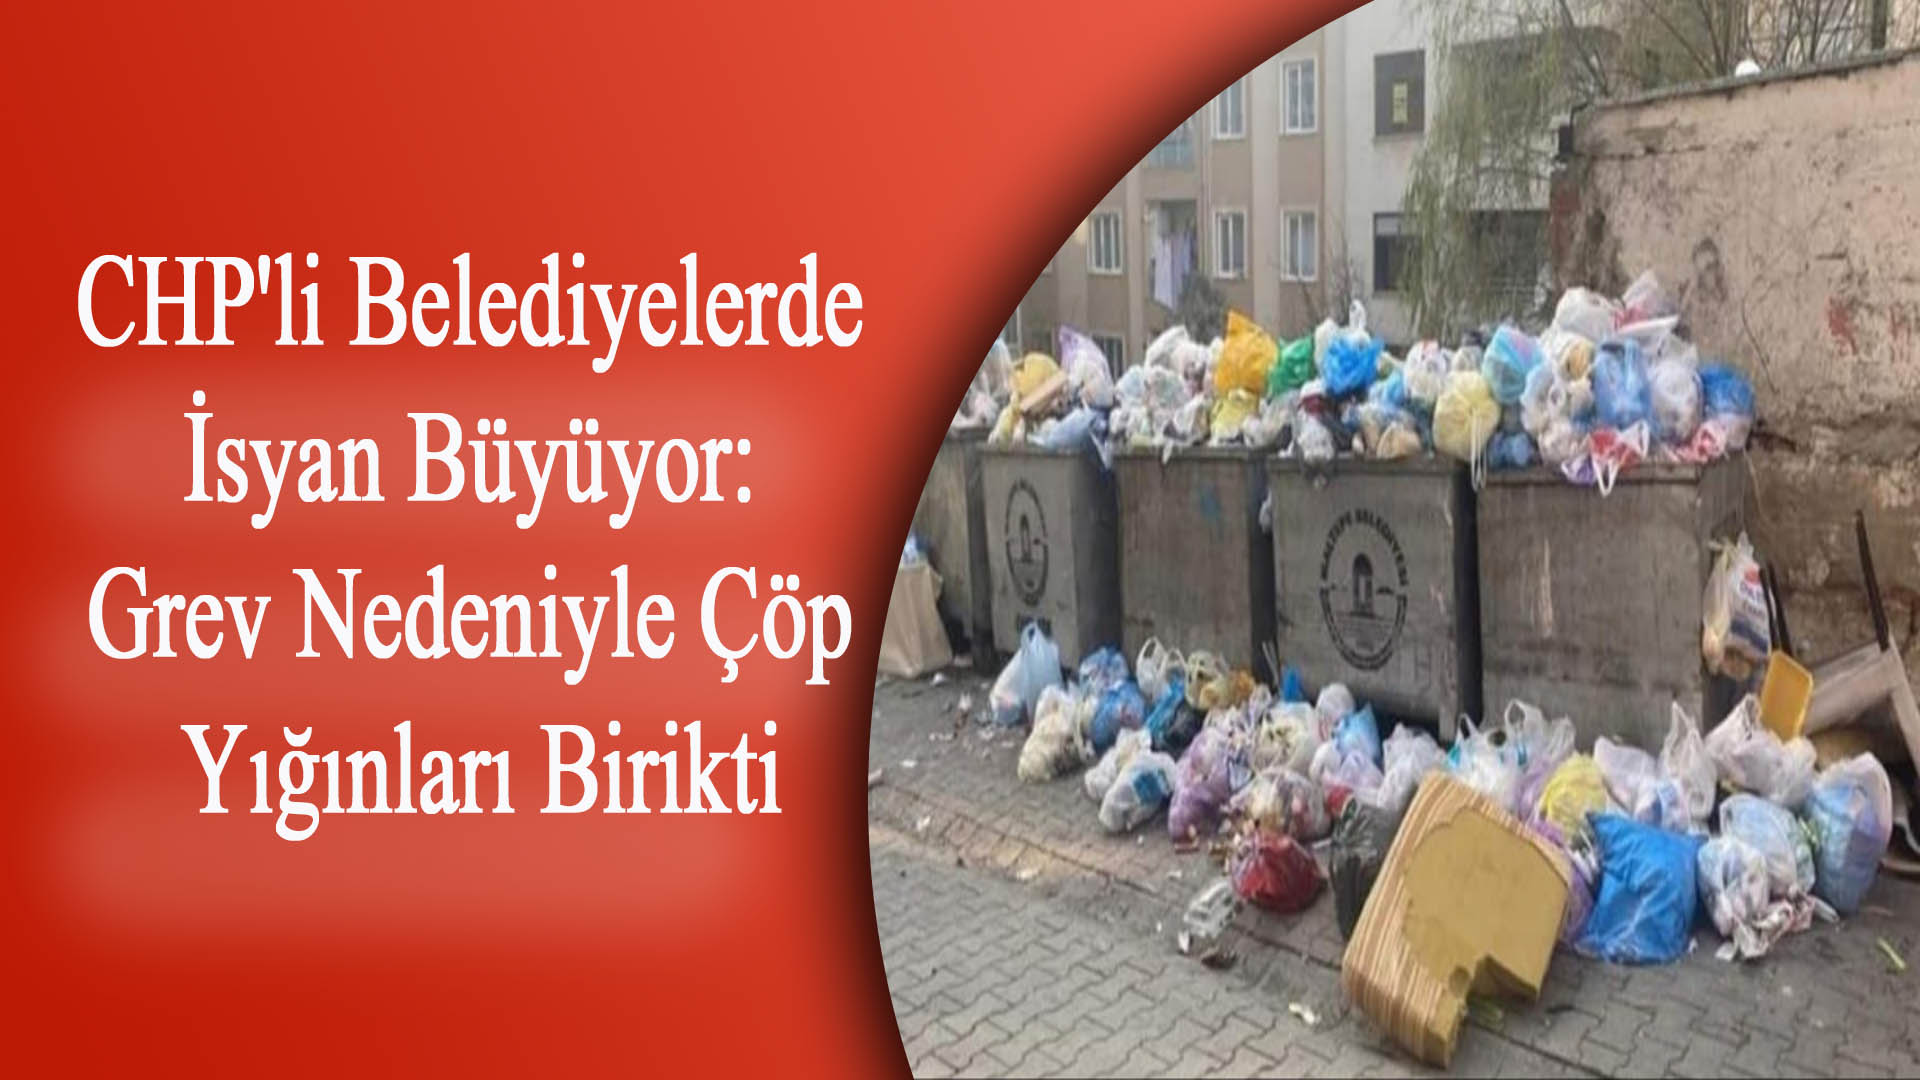 CHP’li Belediyelerde İsyan Büyüyor: Grev Nedeniyle Çöp Yığınları Birikti